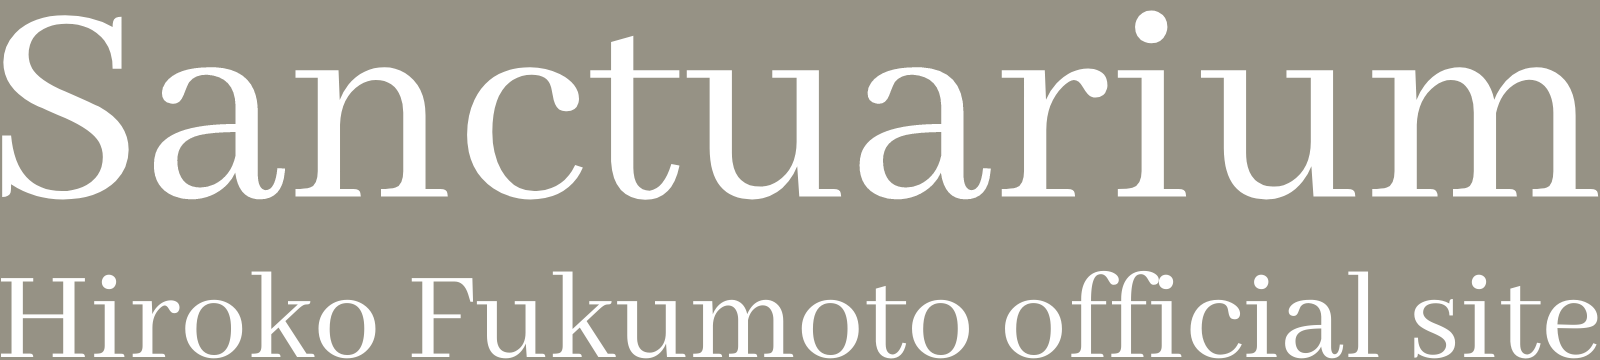 Sanctuarium hirokofukumoto official site (1)